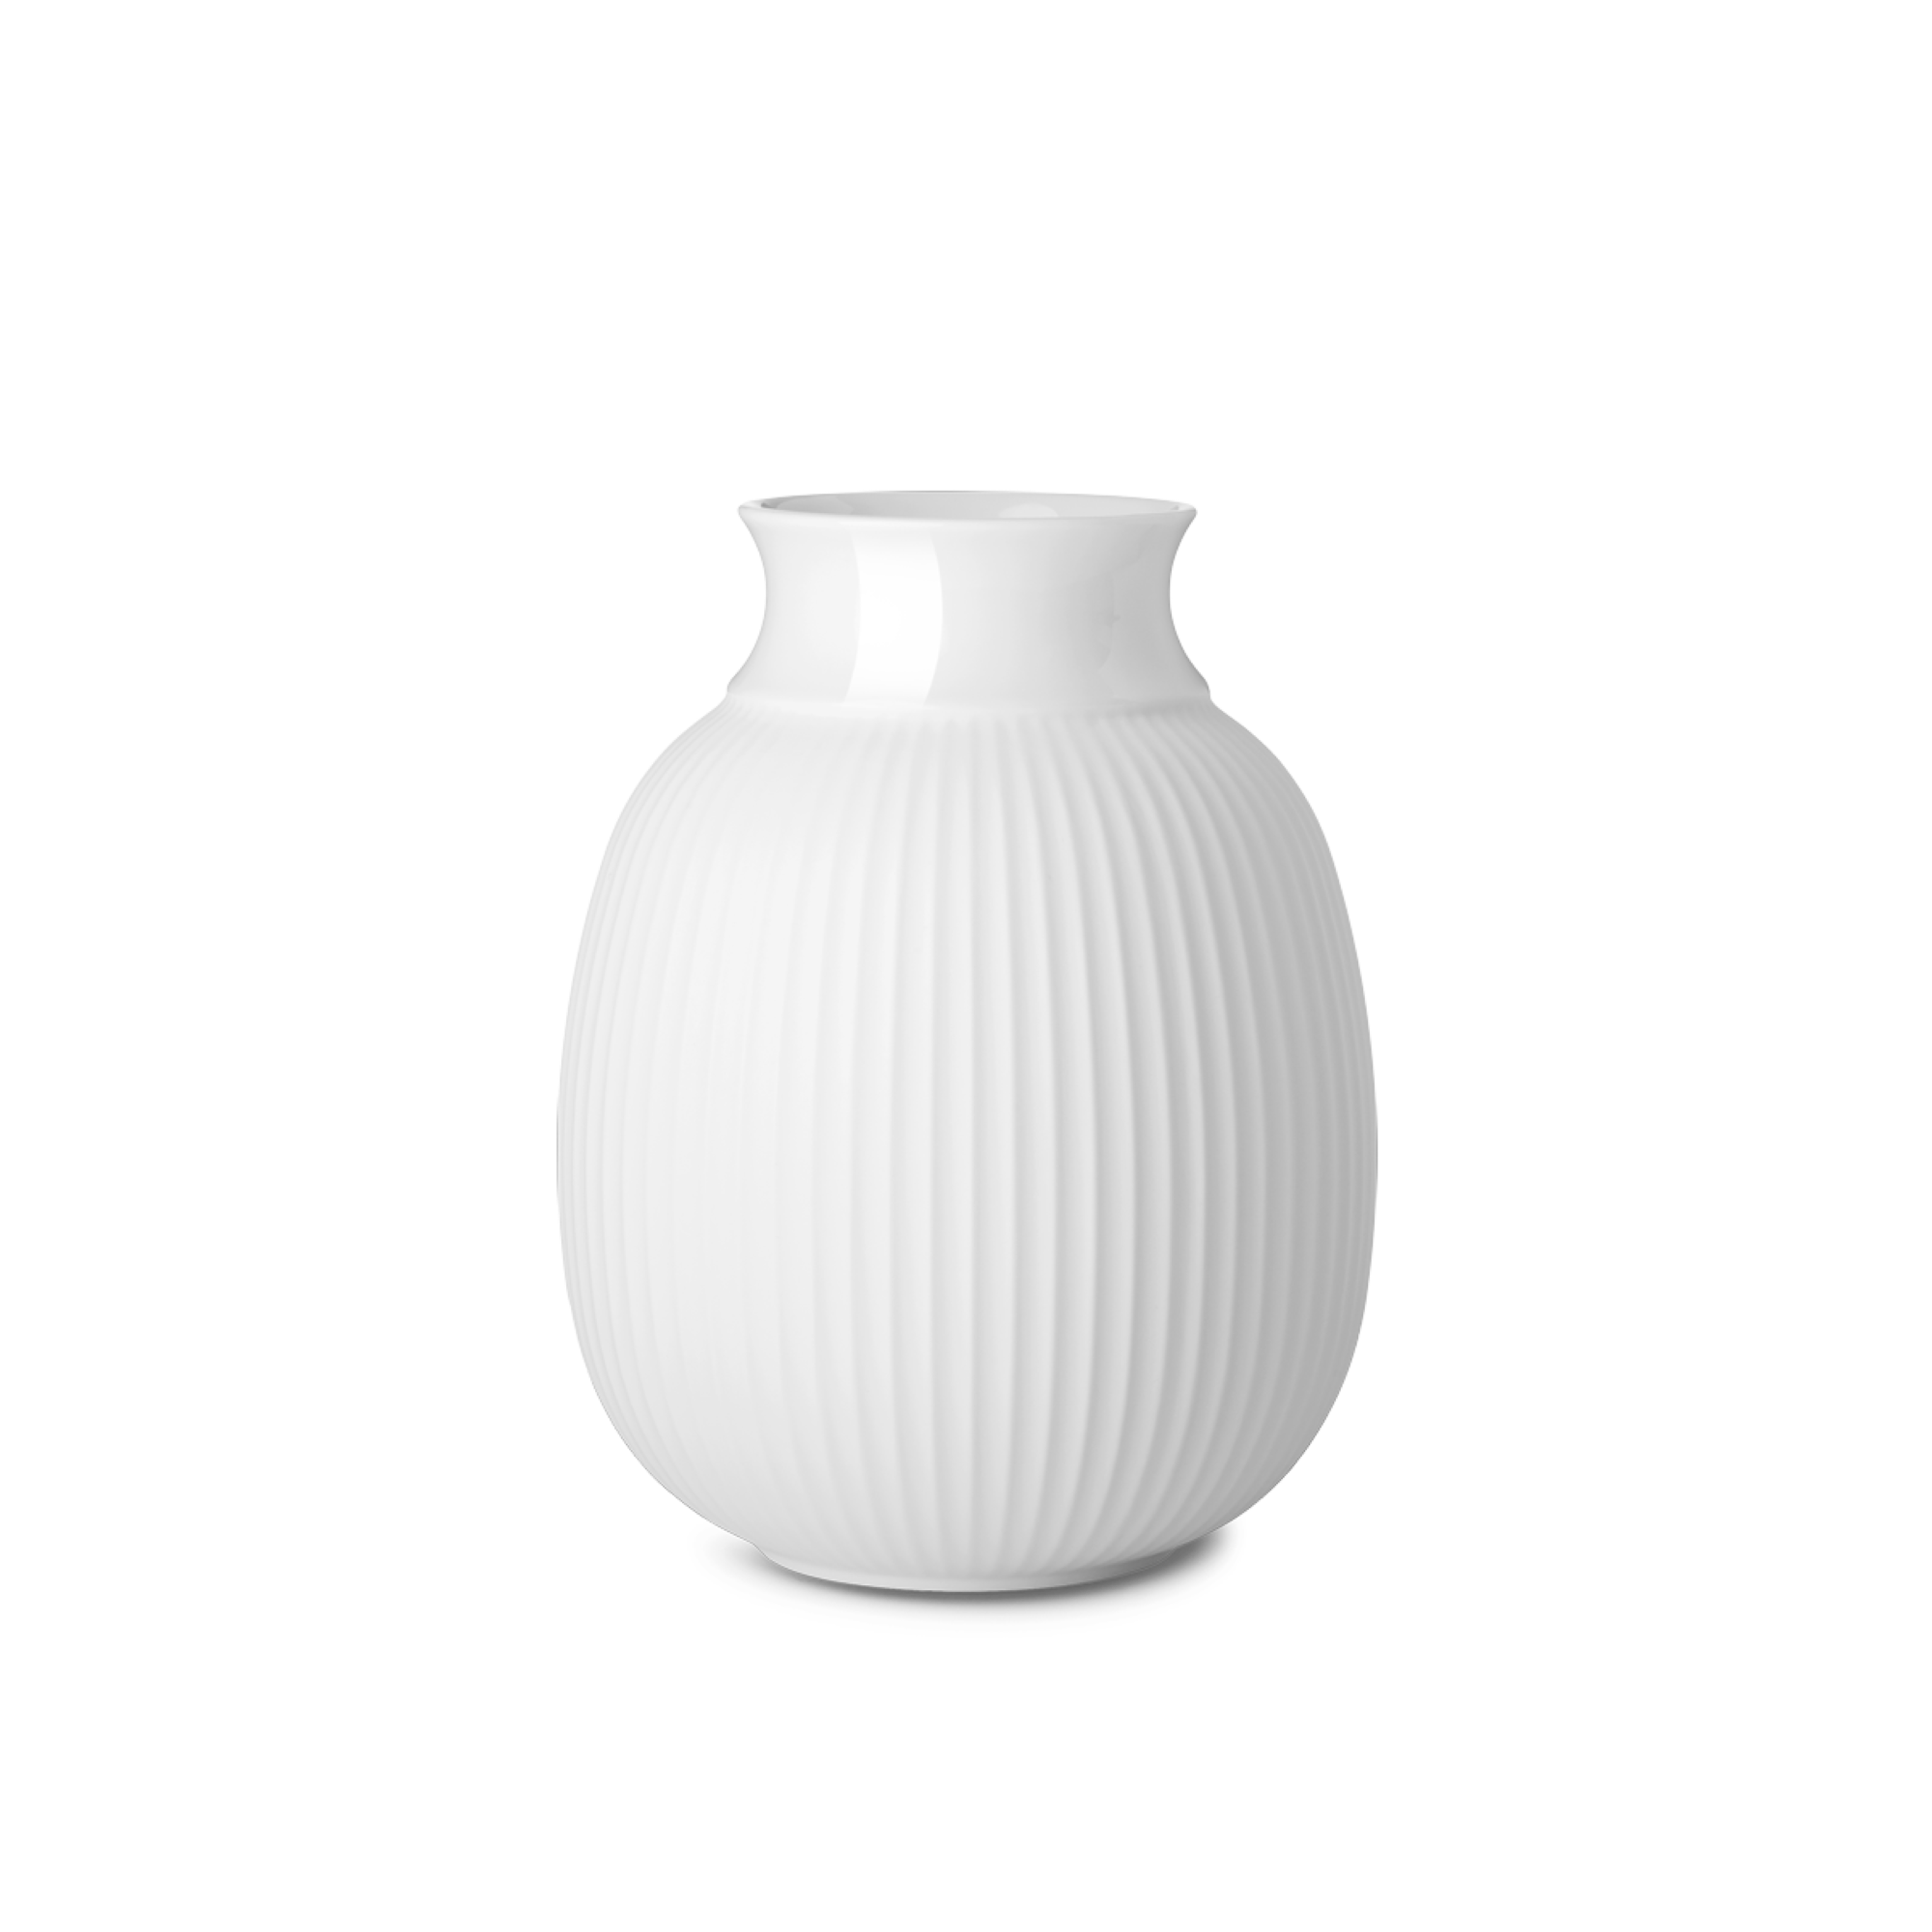 Lyngby Porcelaen Curve Vase - White Porcelain 17.5cm